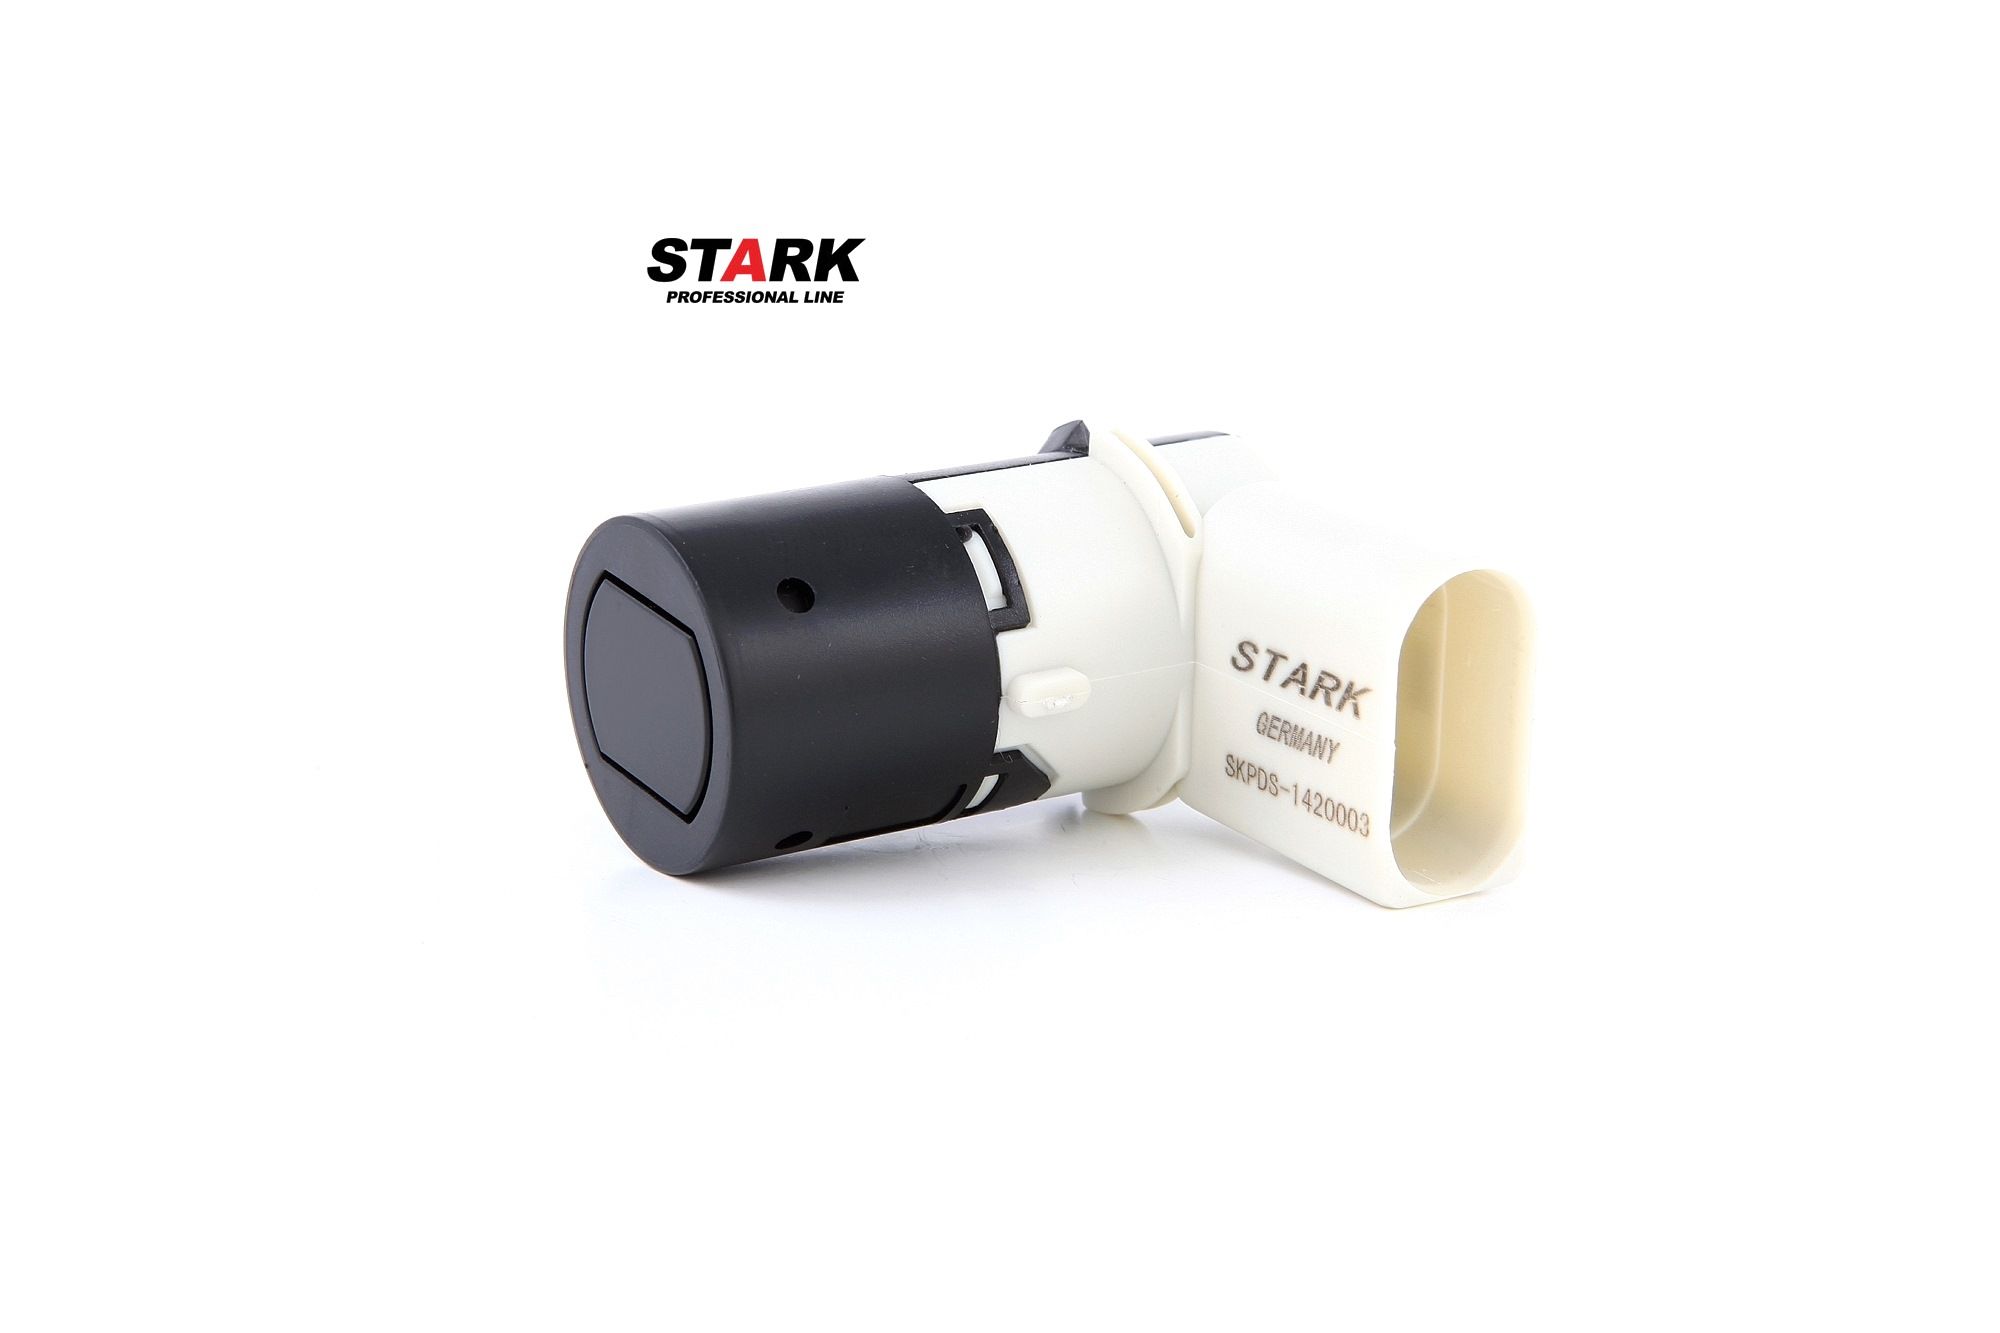 STARK SKPDS-1420003 Parking sensor black, Ultrasonic Sensor